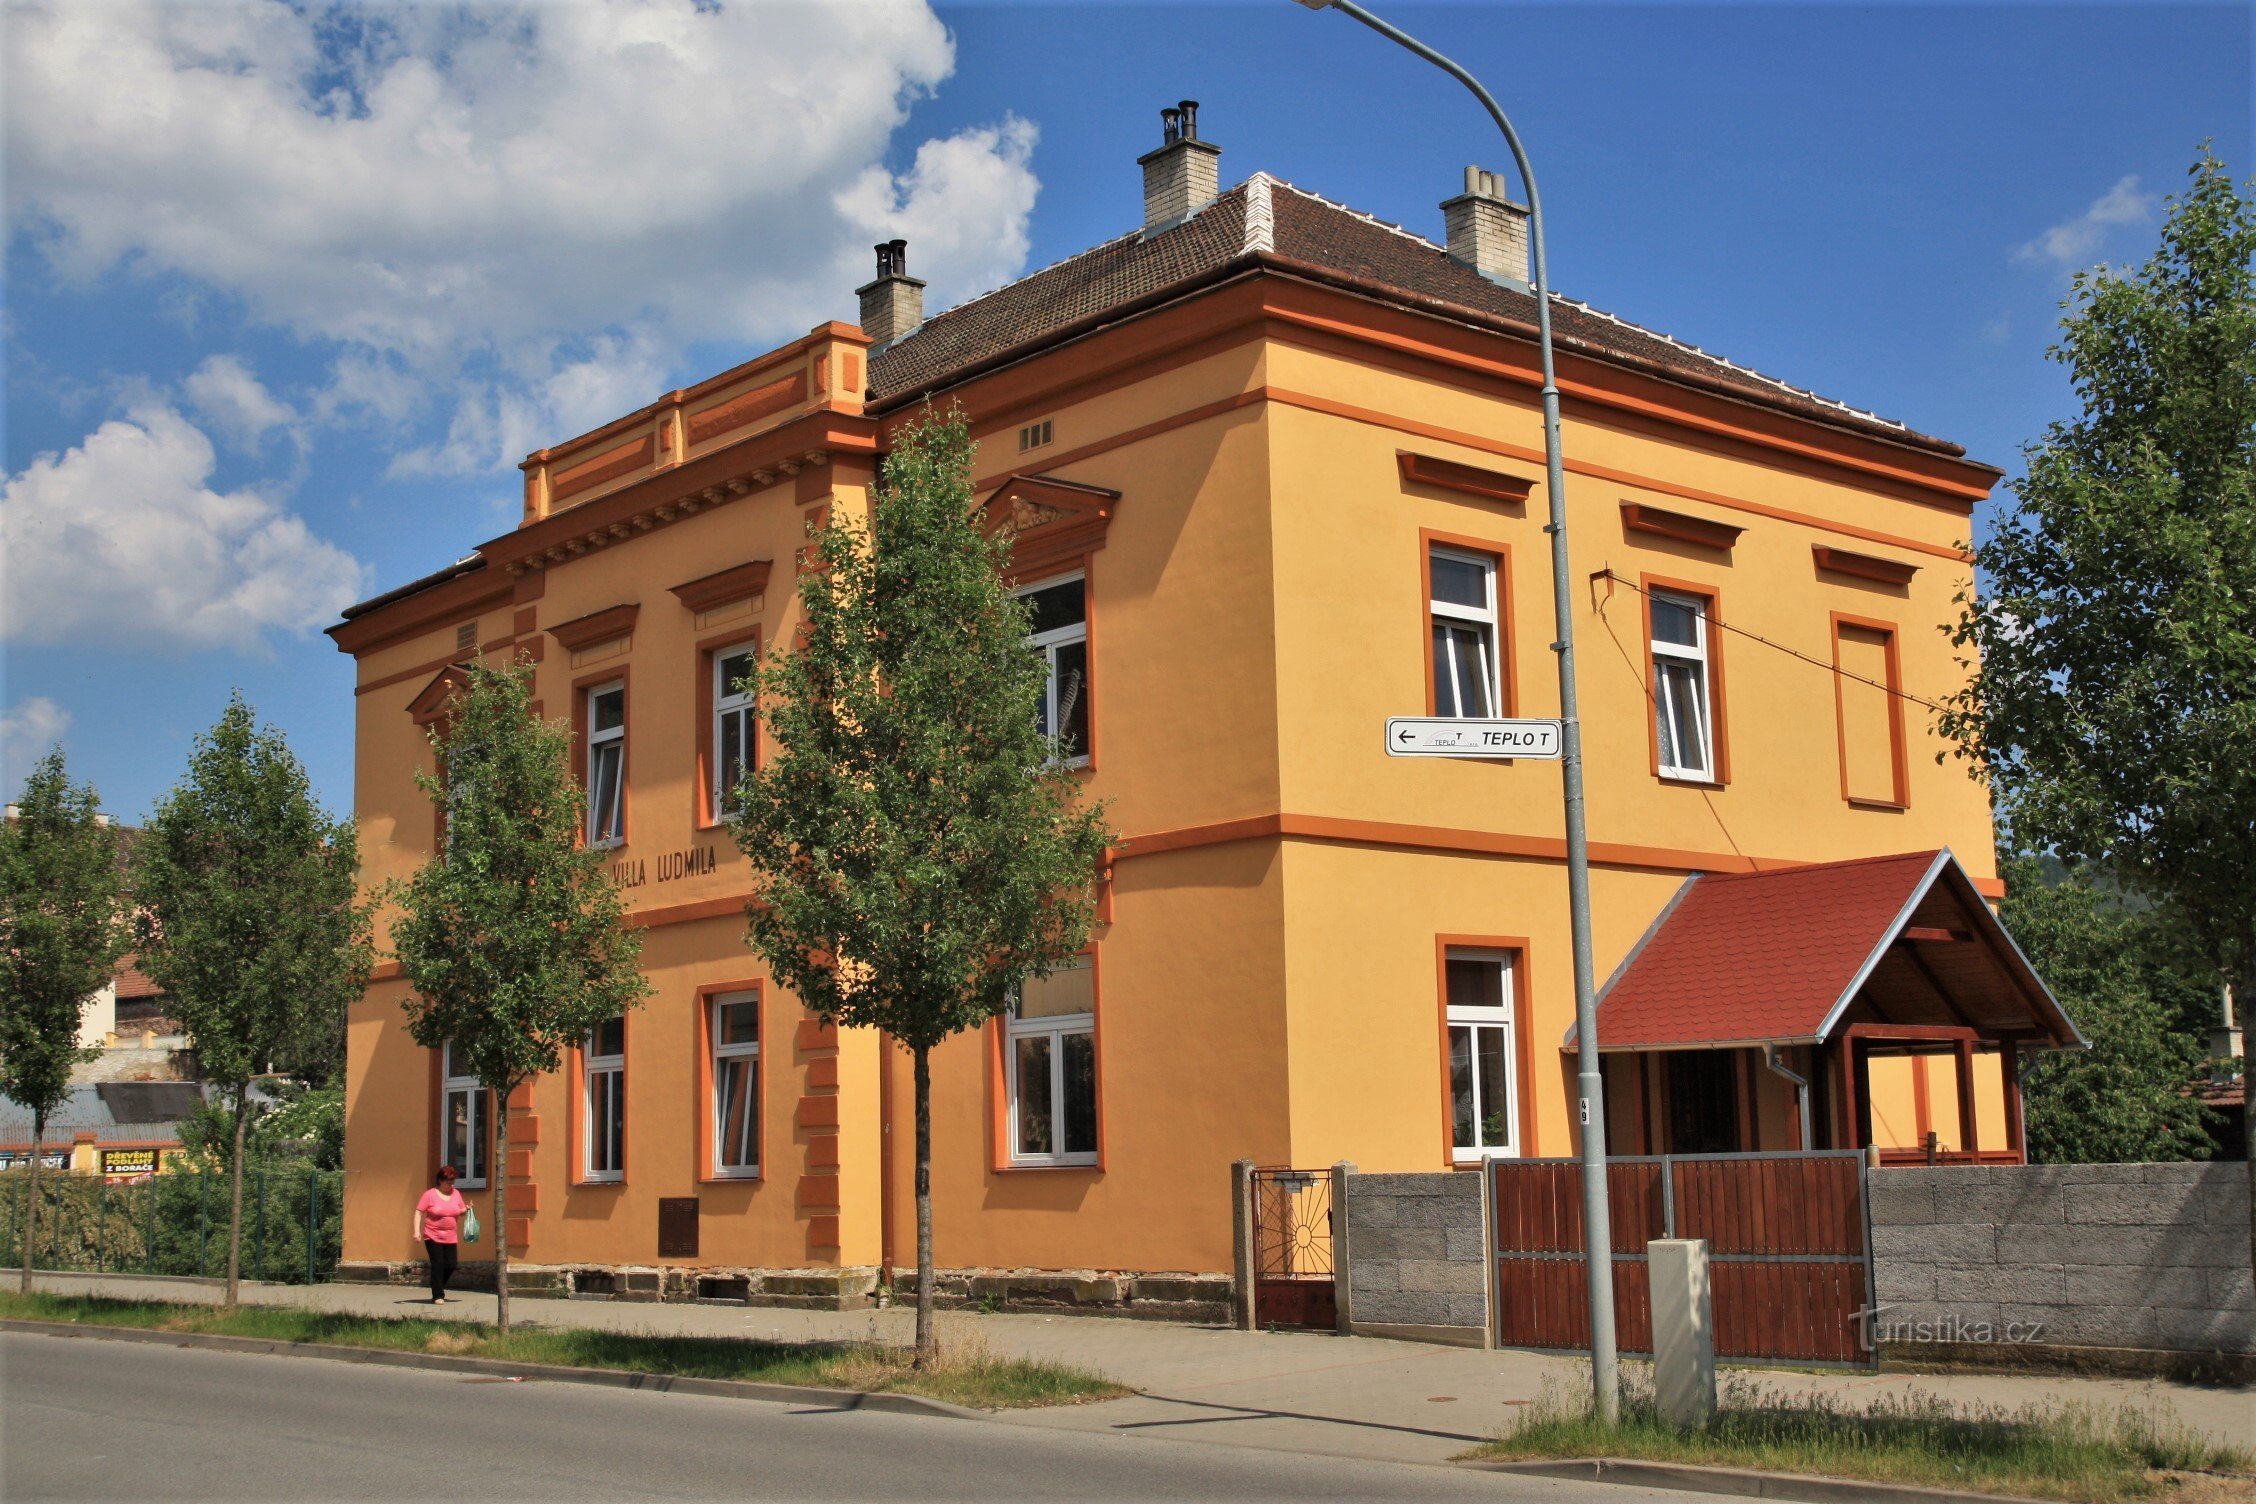 Villa Ludmila in der Nähe des Bahnhofs